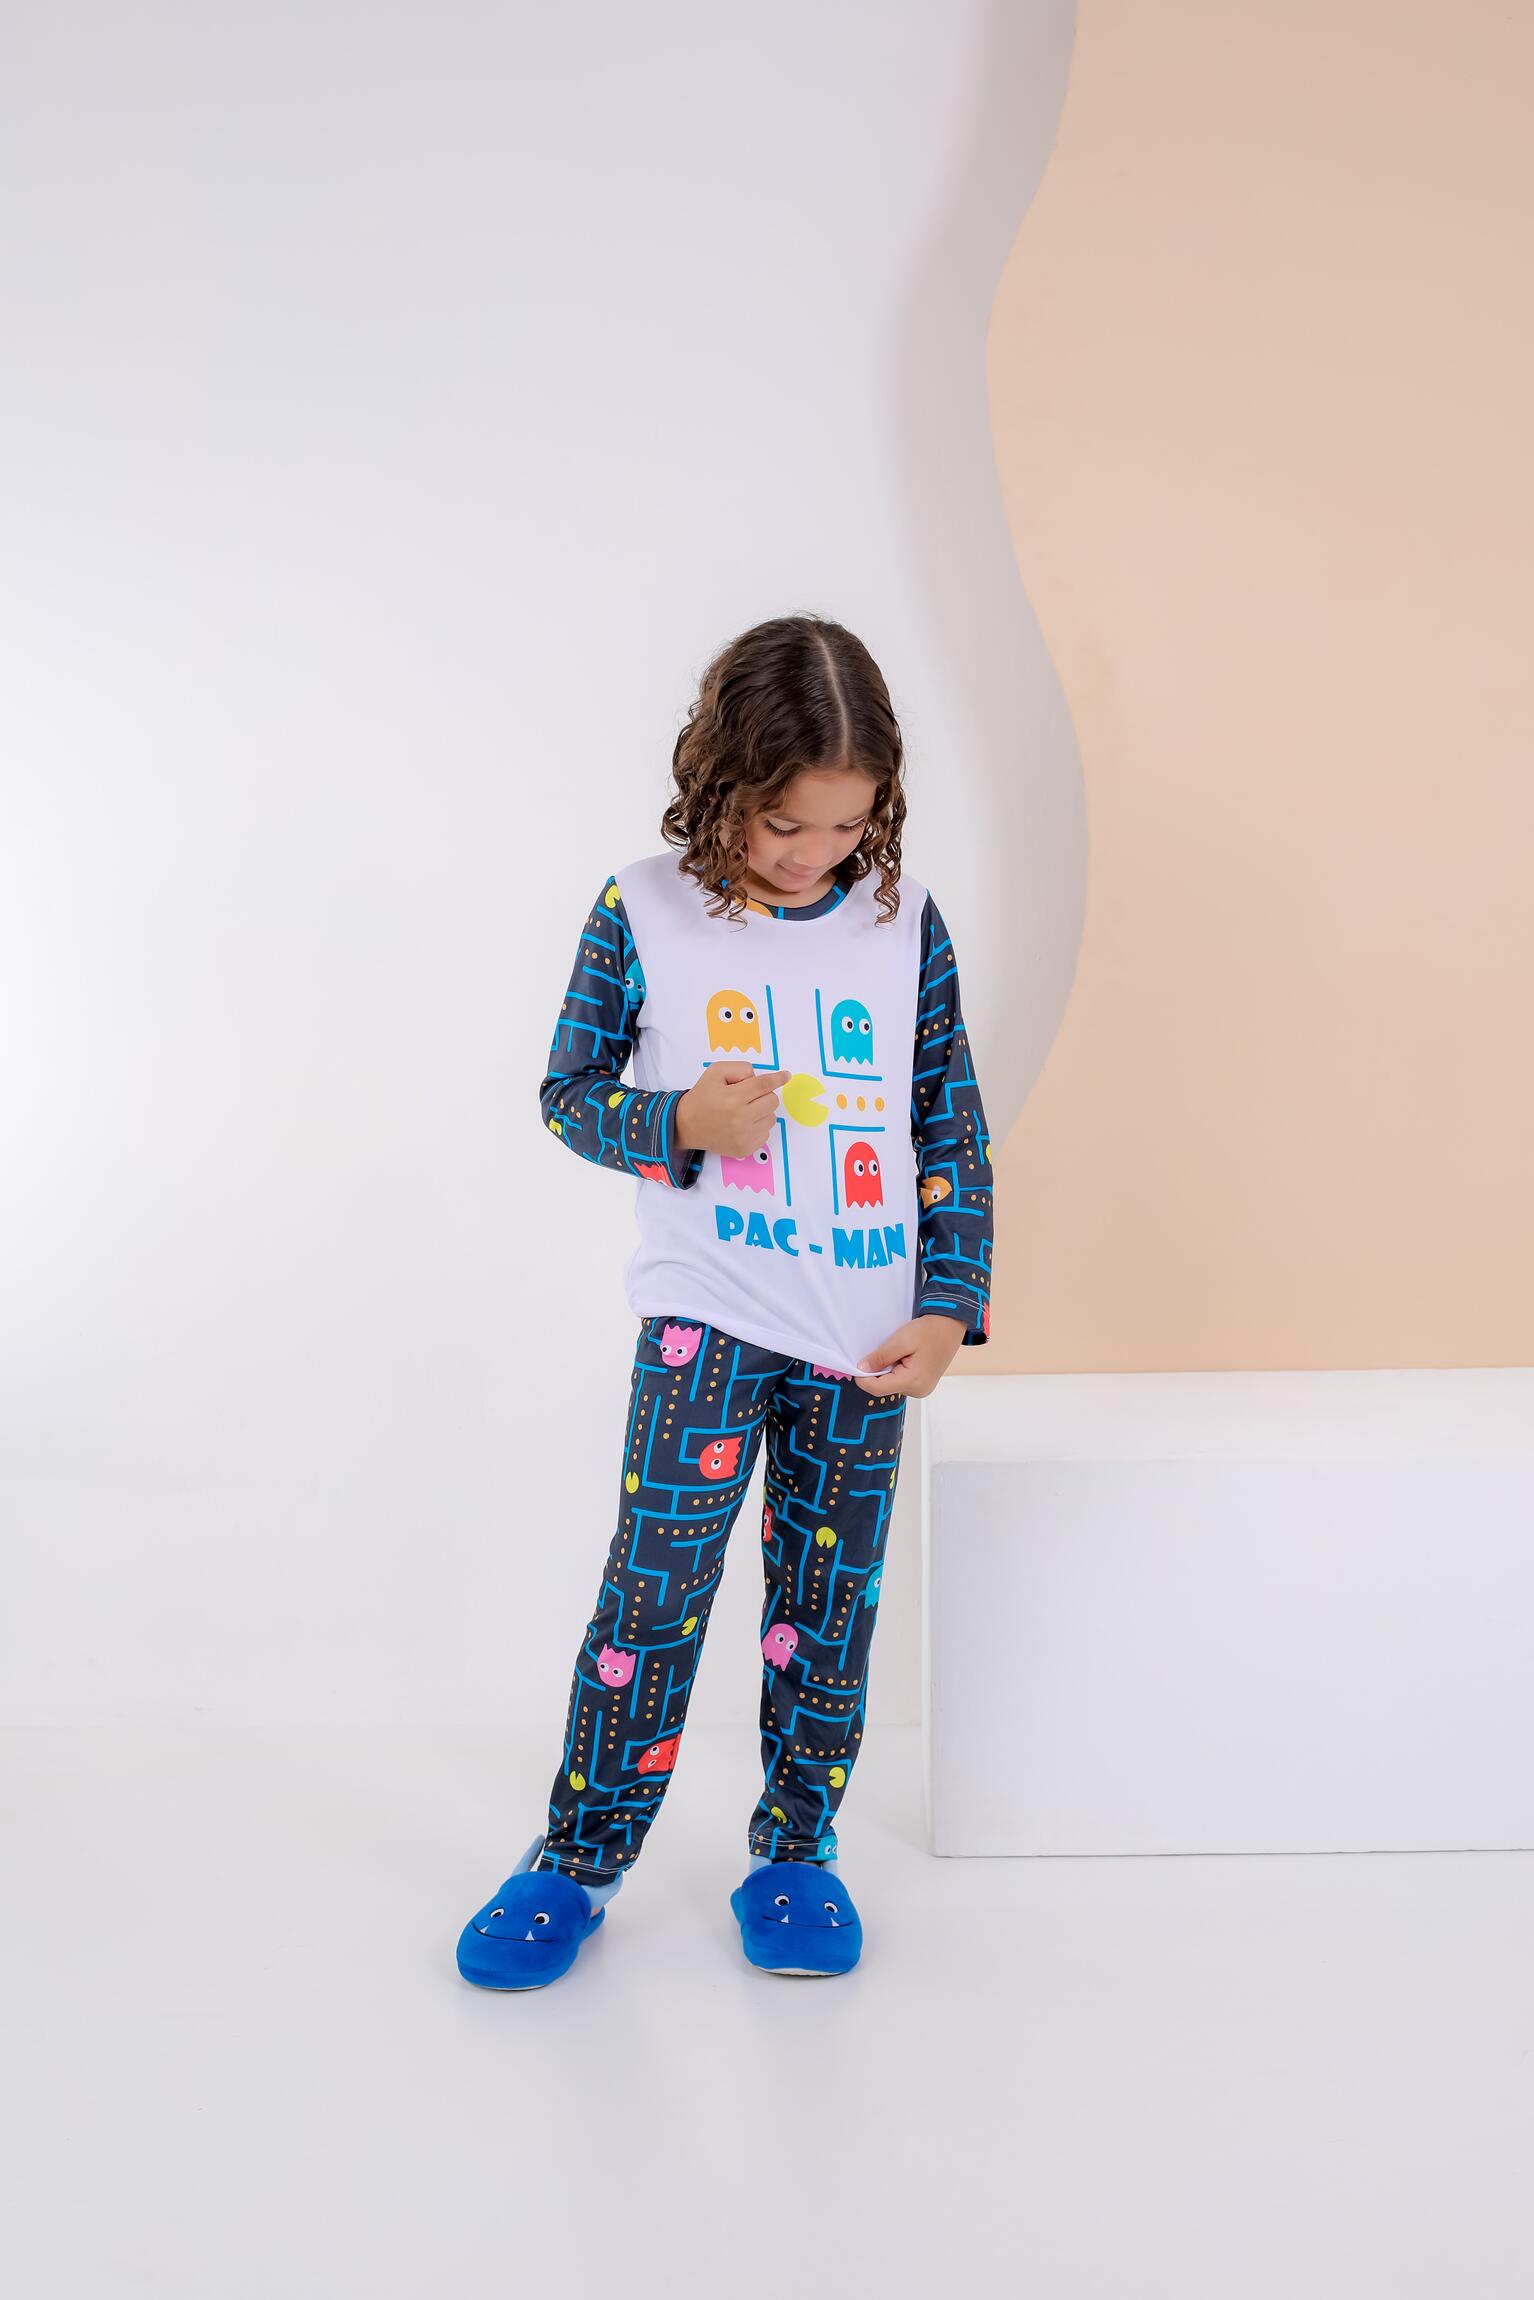 Comprar Pijama Pac - LONGO - partir de R$52,15 - Mundo